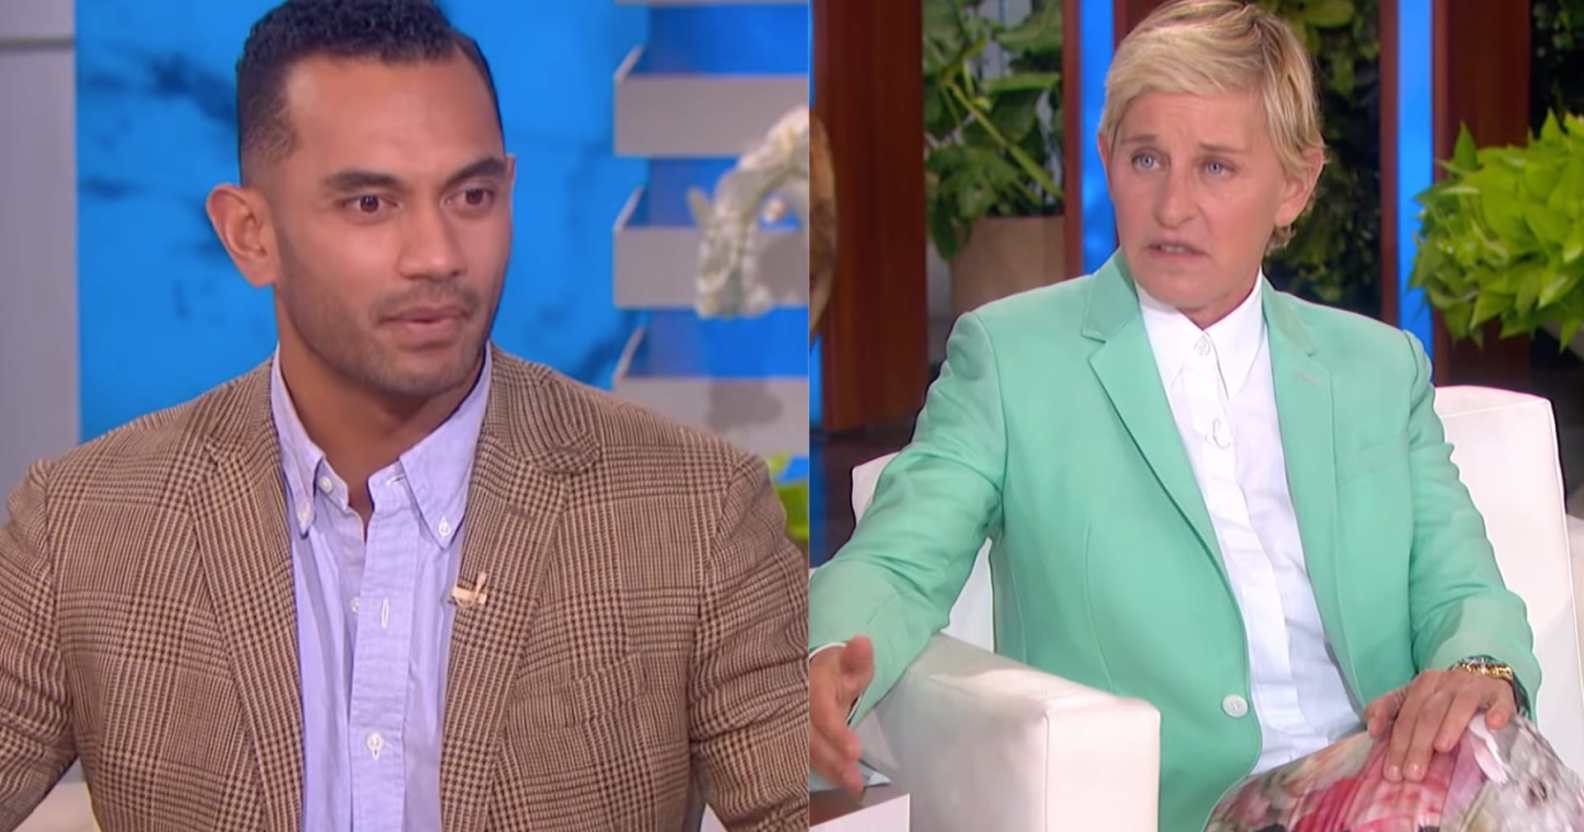 Inoke Tonga speaking on The Ellen DeGeneres Show